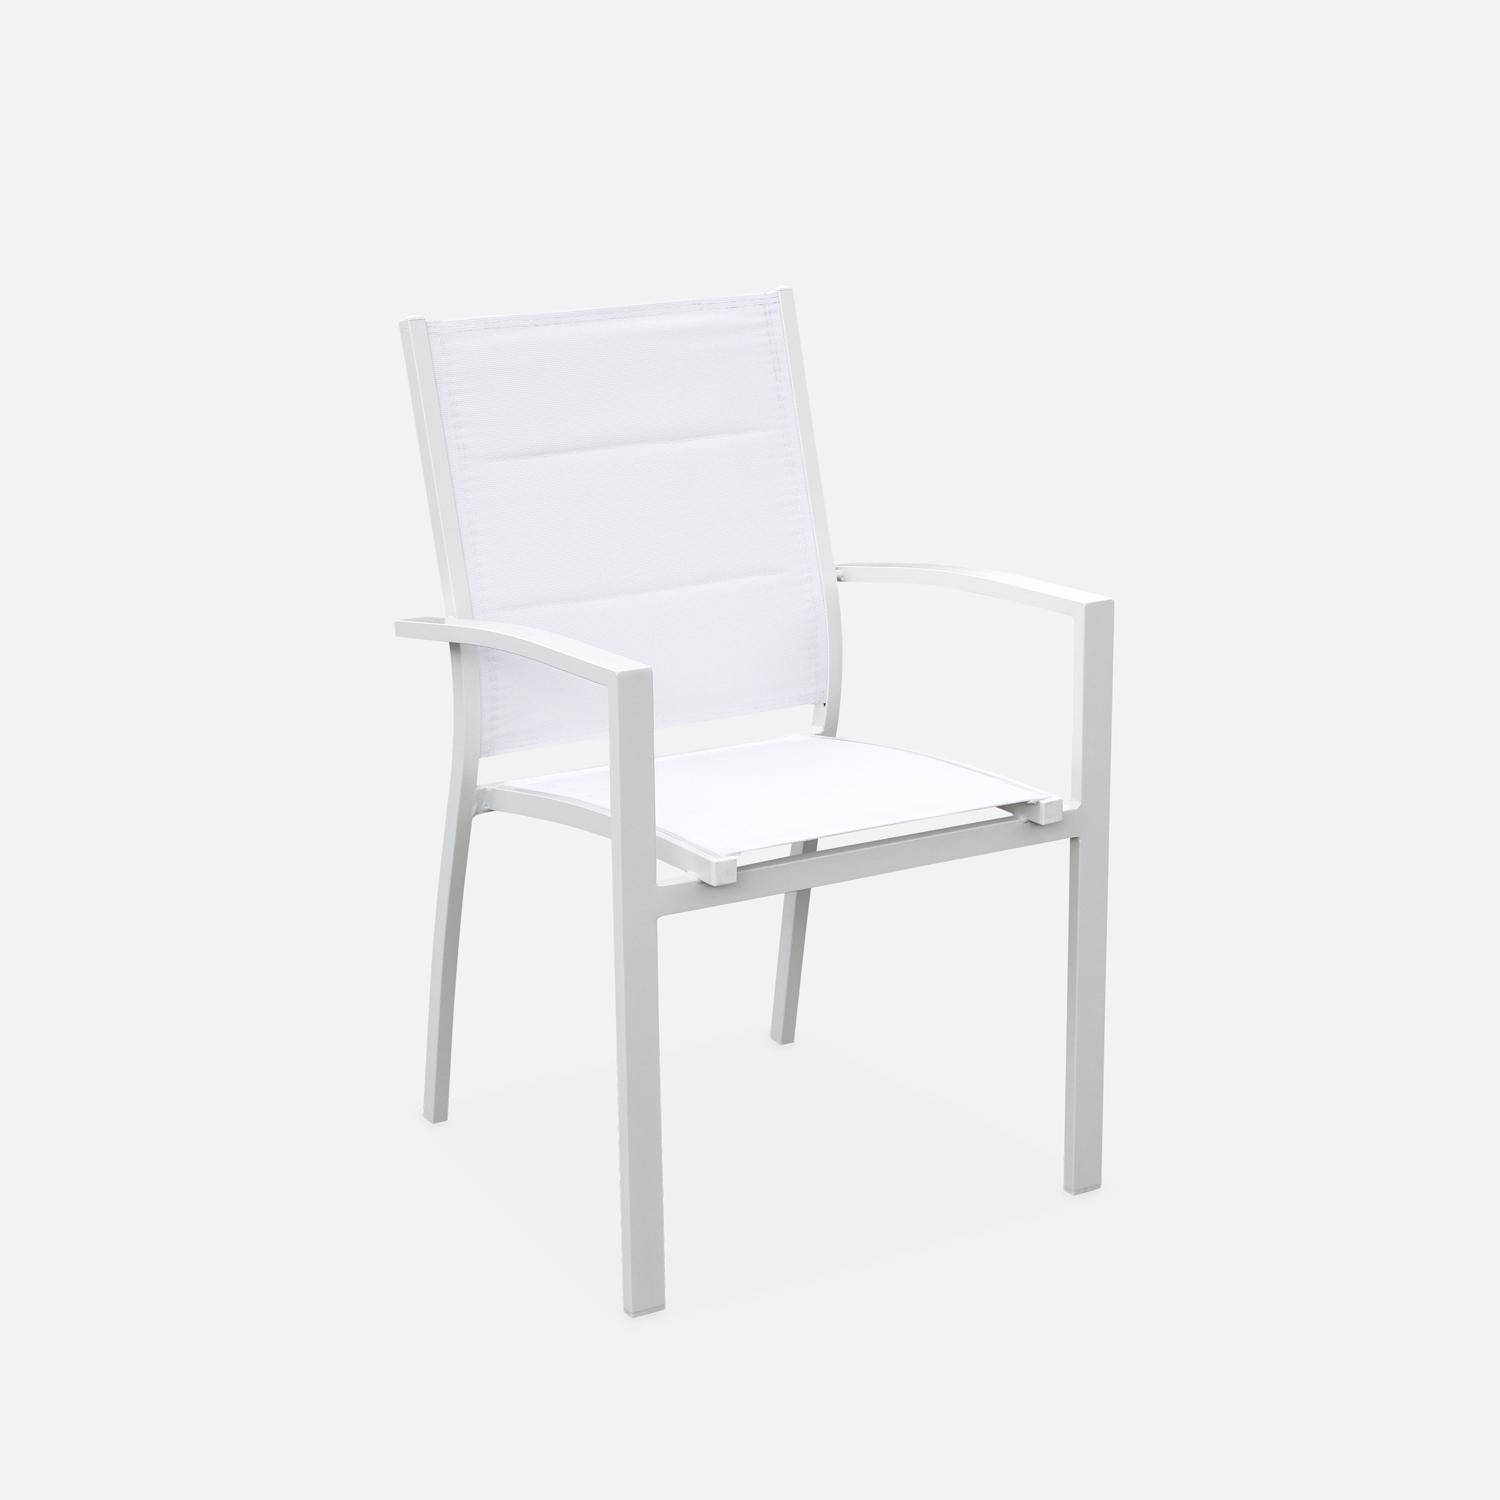 Salon de jardin - Chicago Blanc / Blanc - Table extensible 175/245cm avec rallonge et 8 assises en textilène Photo6